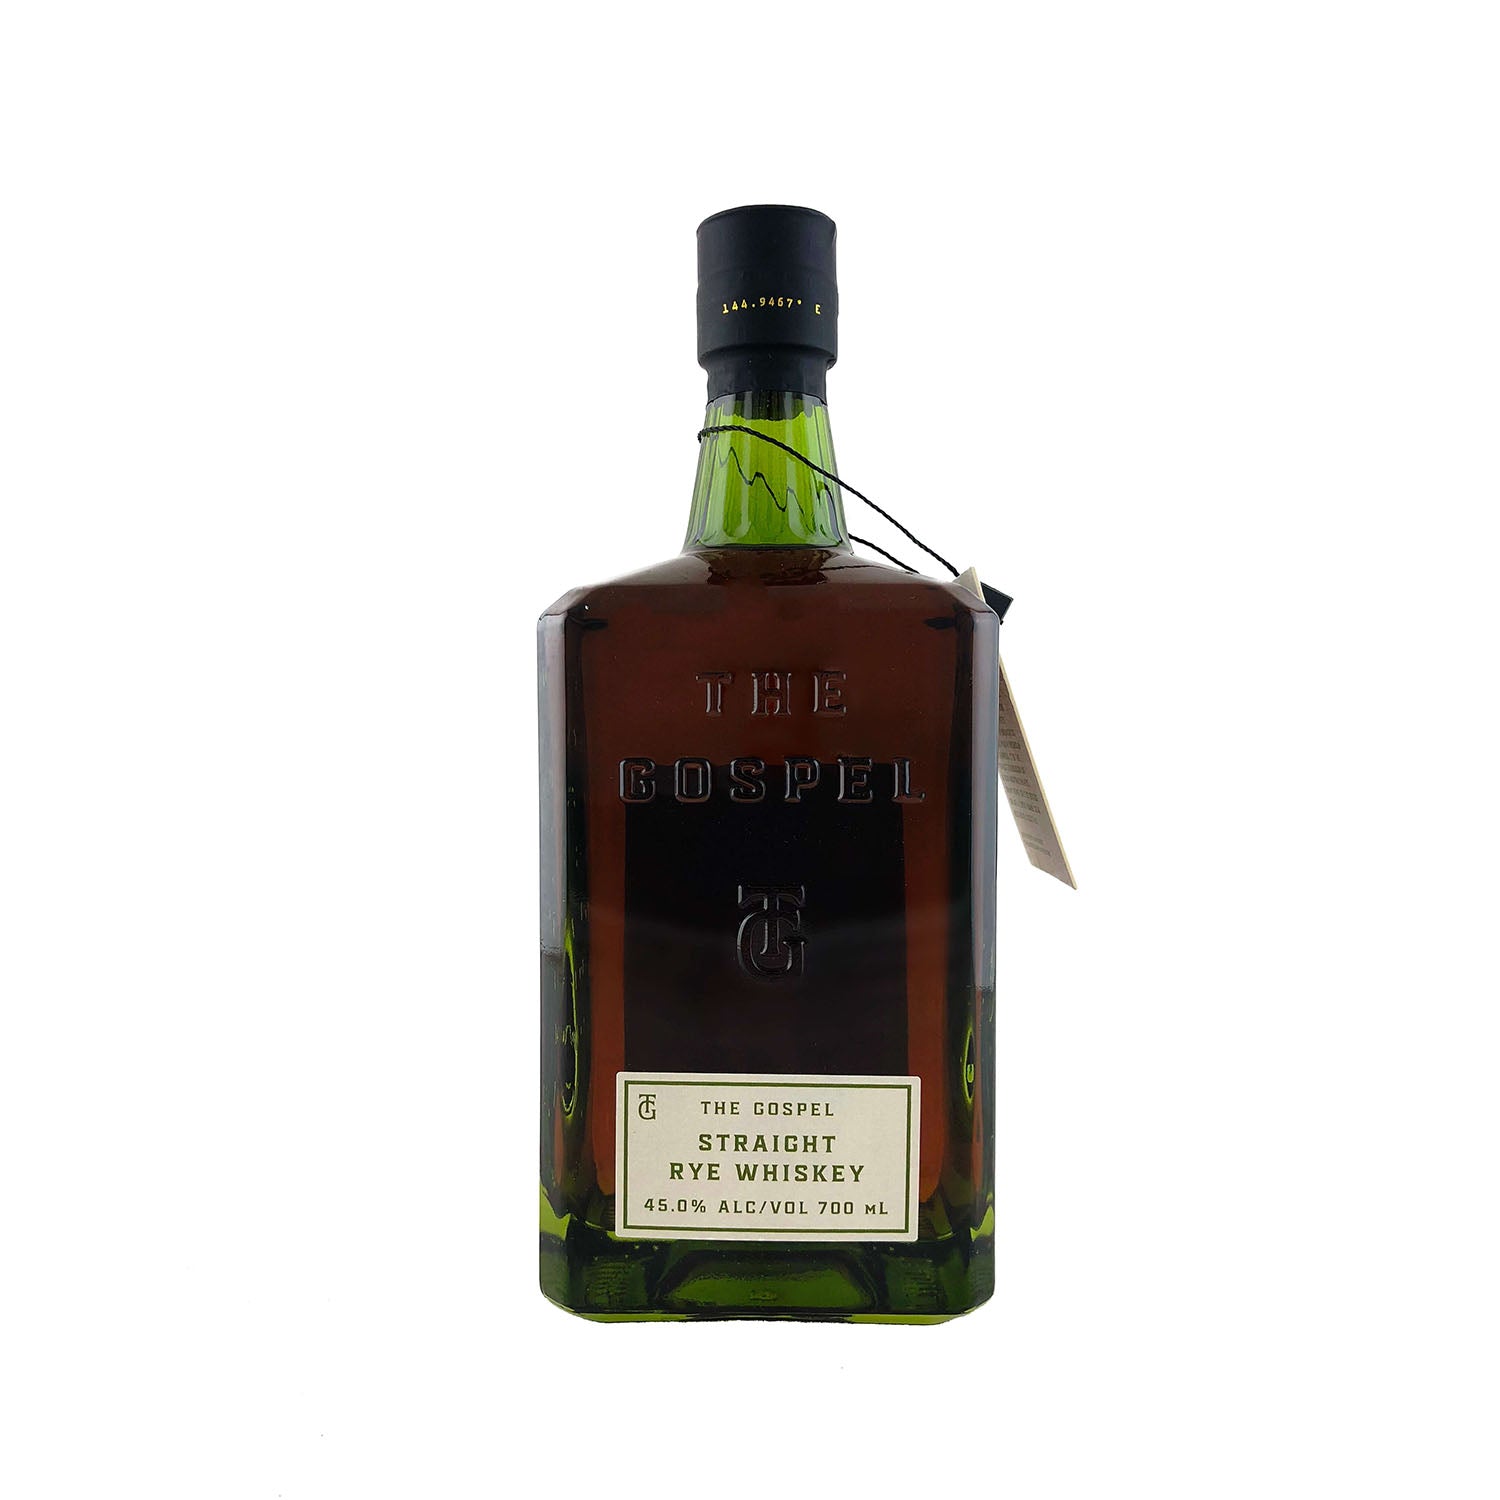 The Gospel Rye Whisky